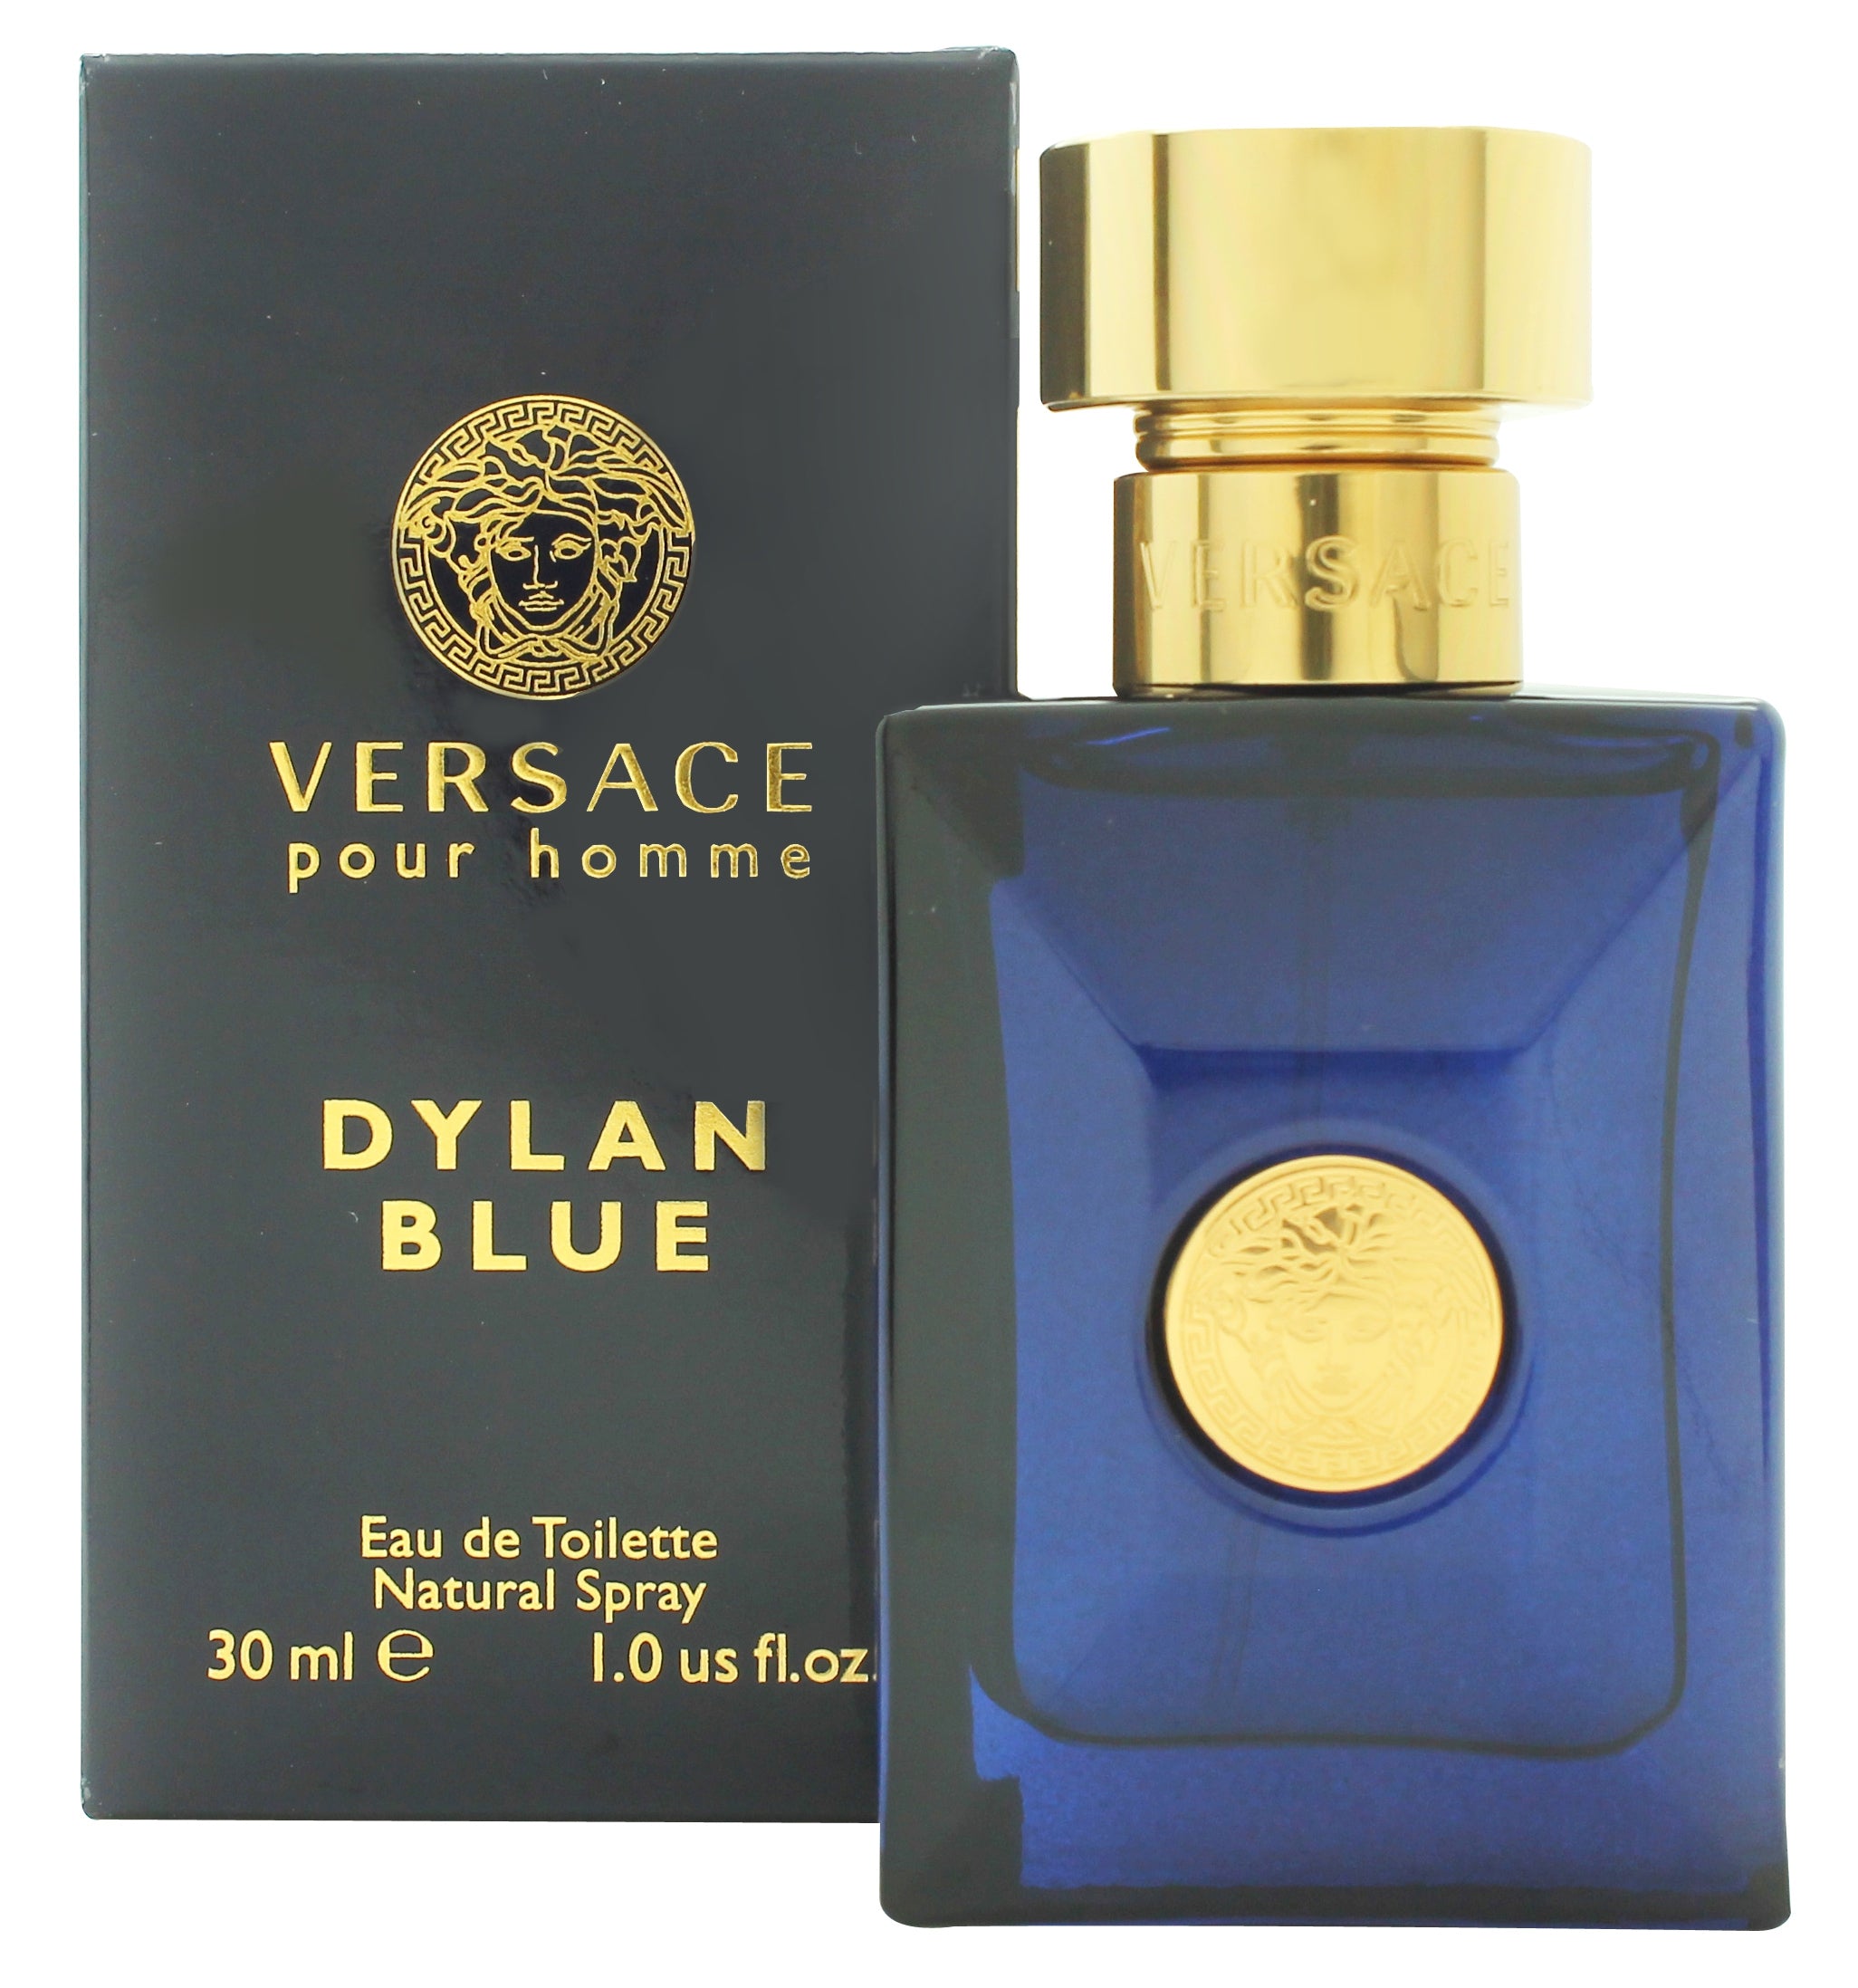 View Versace Pour Homme Dylan Blue Eau de Toilette 30ml Spray information